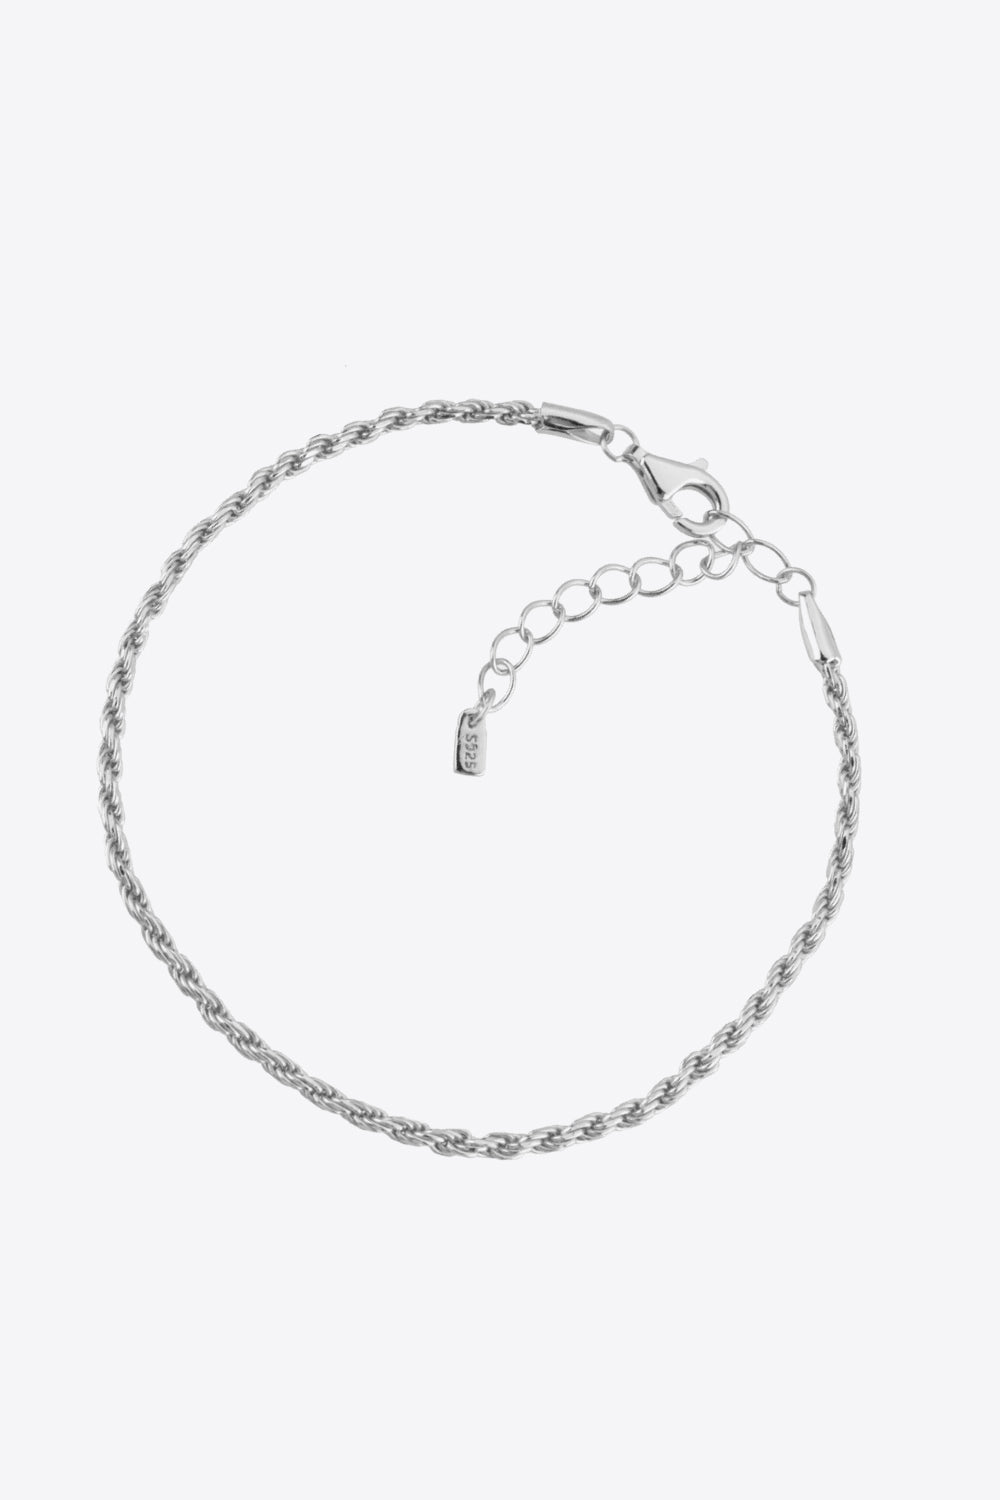 925 Sterling Silver Twisted Bracelet - Bracelets - FITGGINS